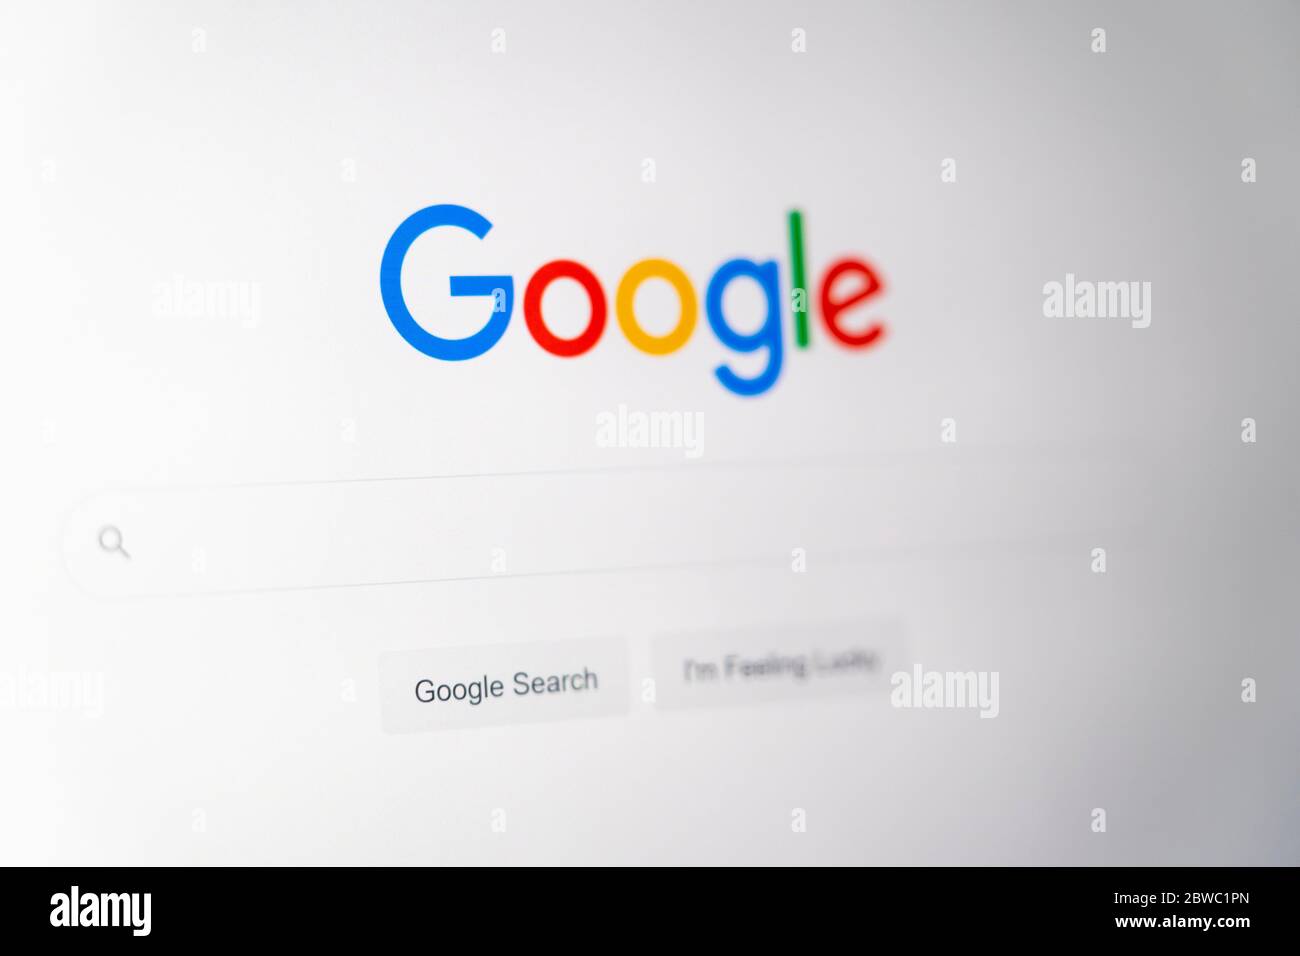 Le site Web de Google HomePage avec le logo Google, la barre de recherche et je suis le bouton chanceux dans la langue anglaise sur un écran d'ordinateur Banque D'Images